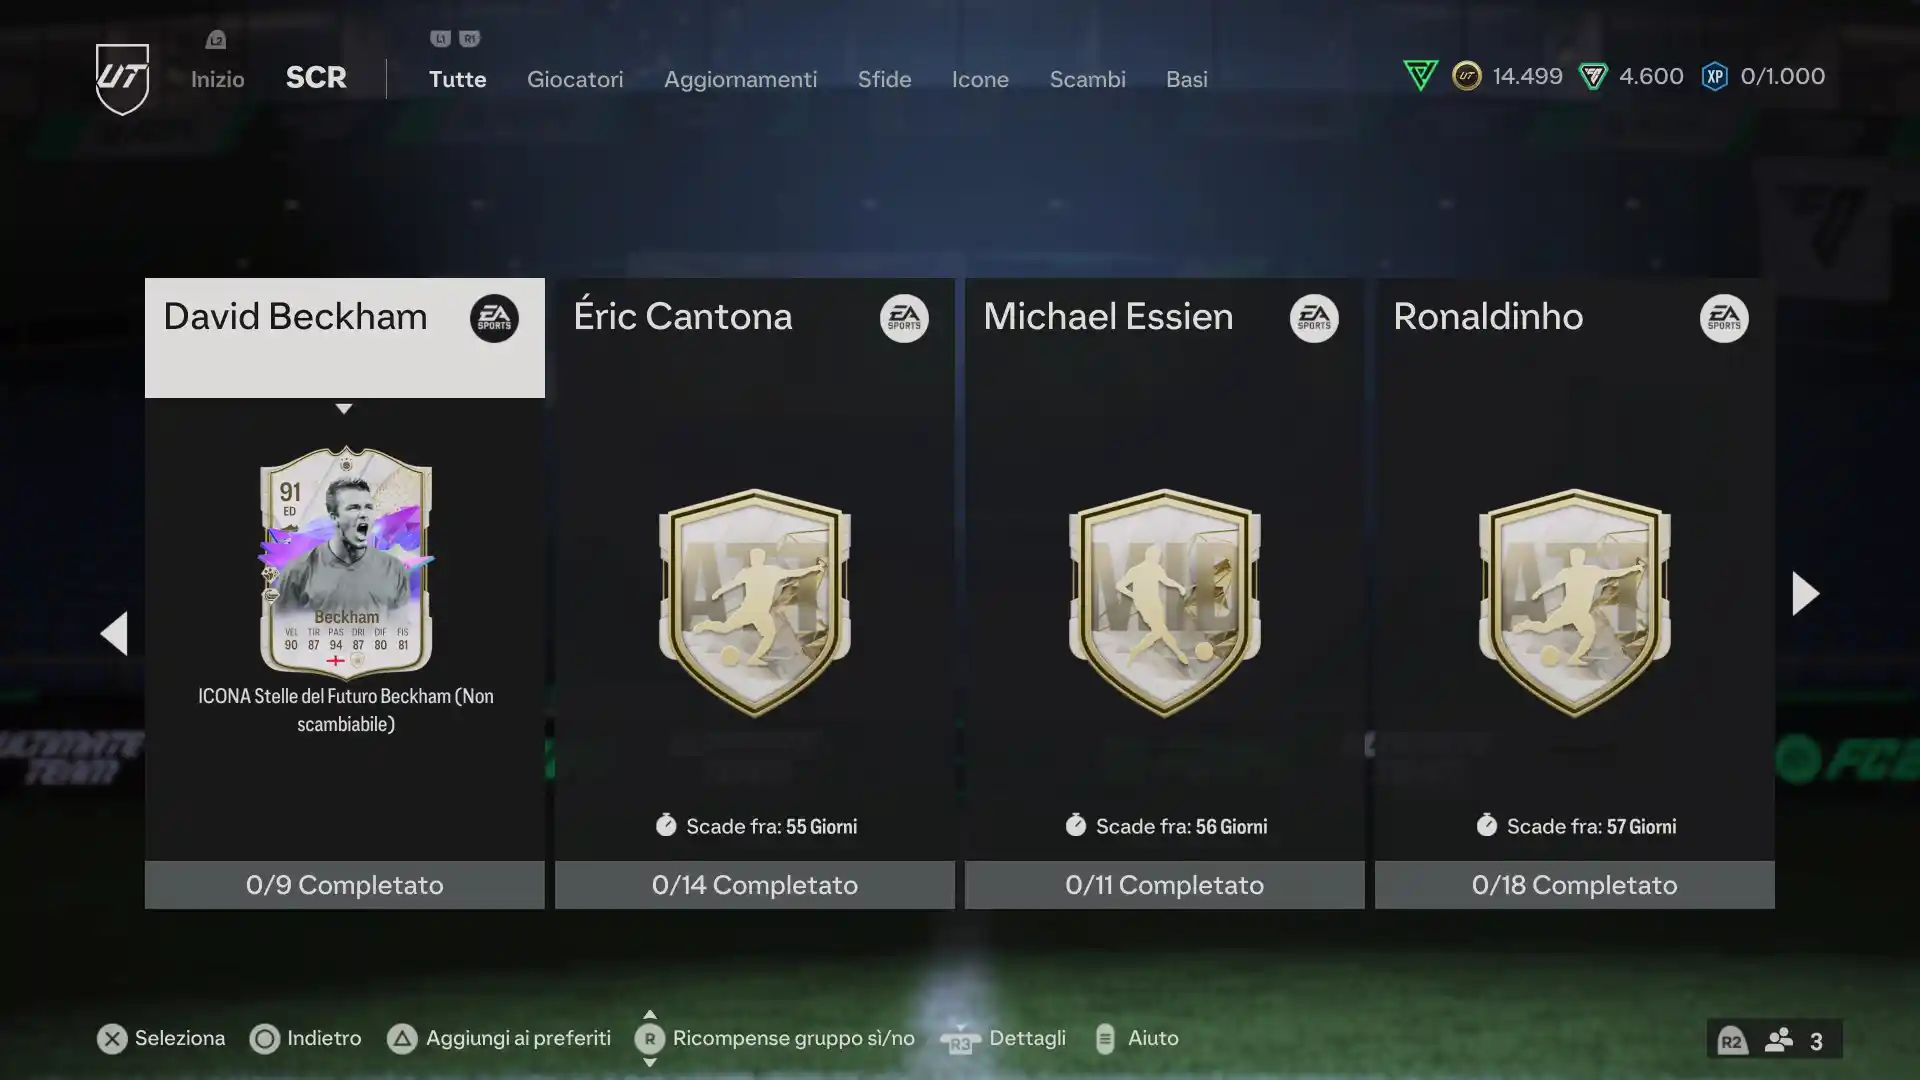 EA FC 24 Ultimate Team: come ottenere David Beckham Icona Future Stars 91 - soluzioni SBC